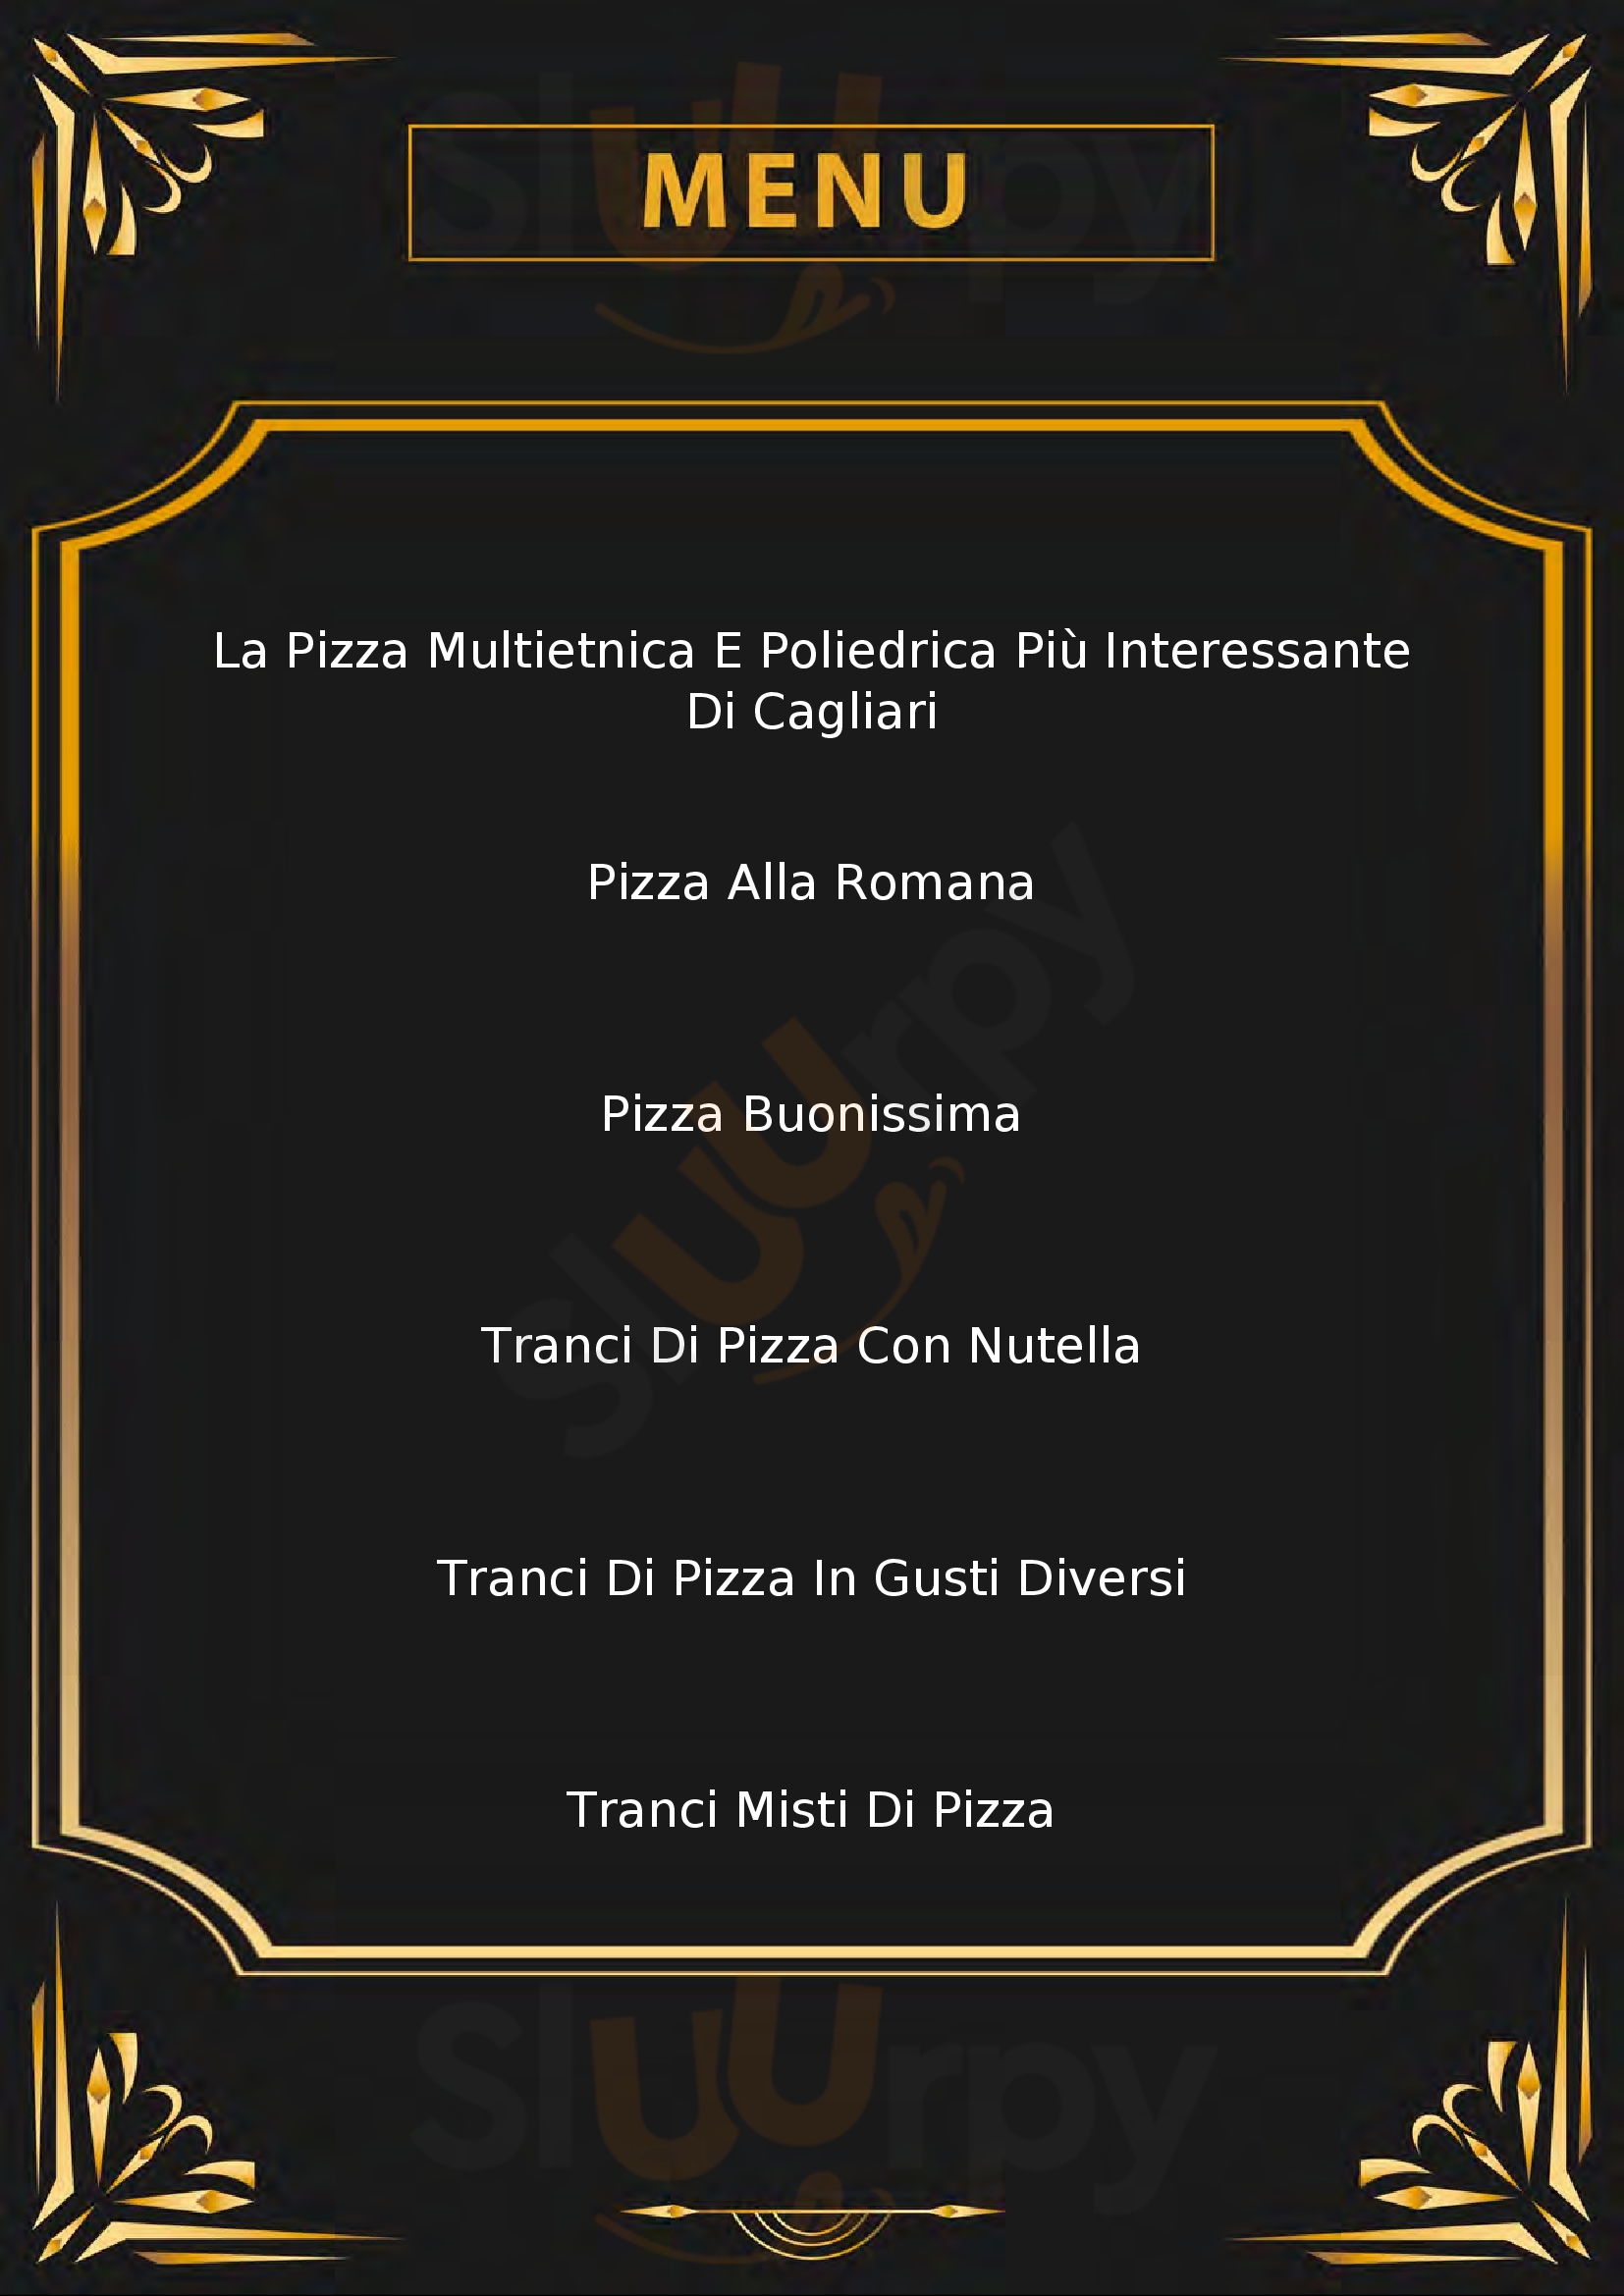 Pizzeria Federico Nansen Cagliari menù 1 pagina